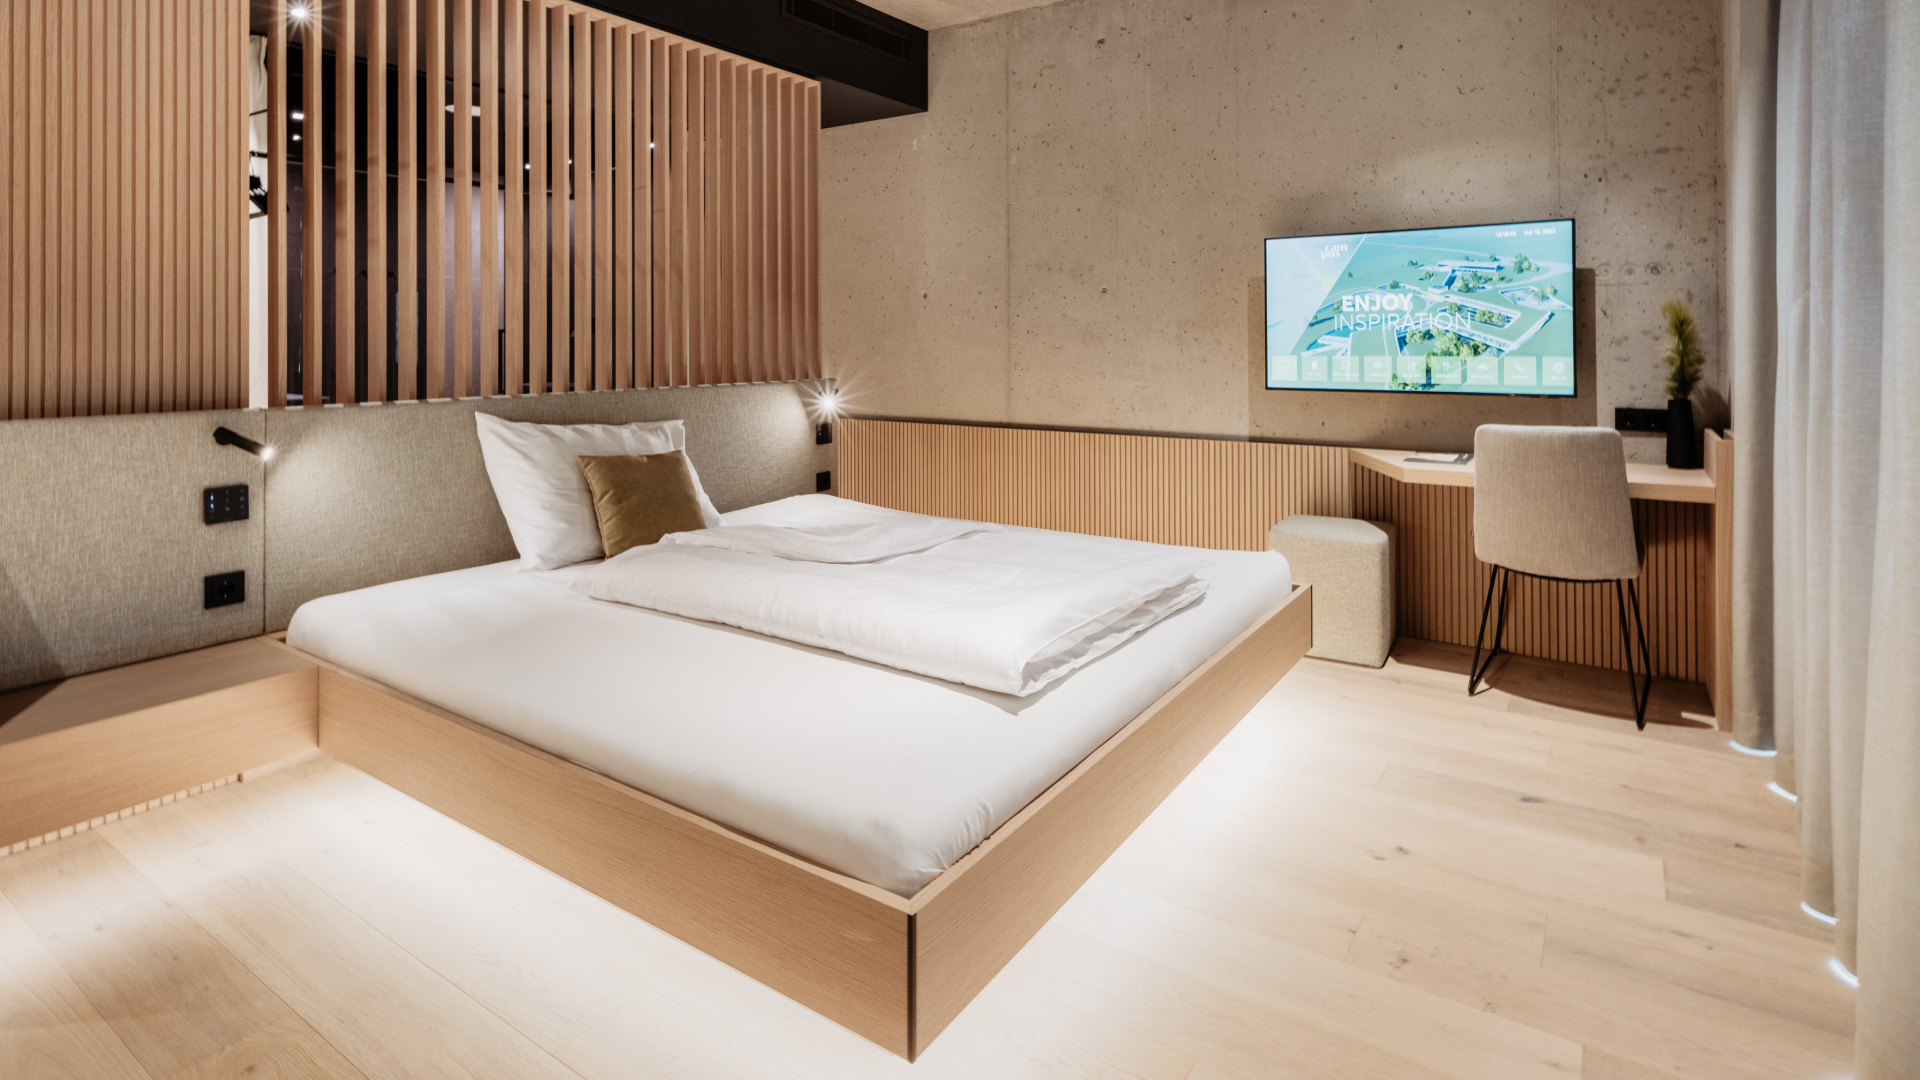 Moderní hotelový pokoj, perfektně komfortní pro hosty